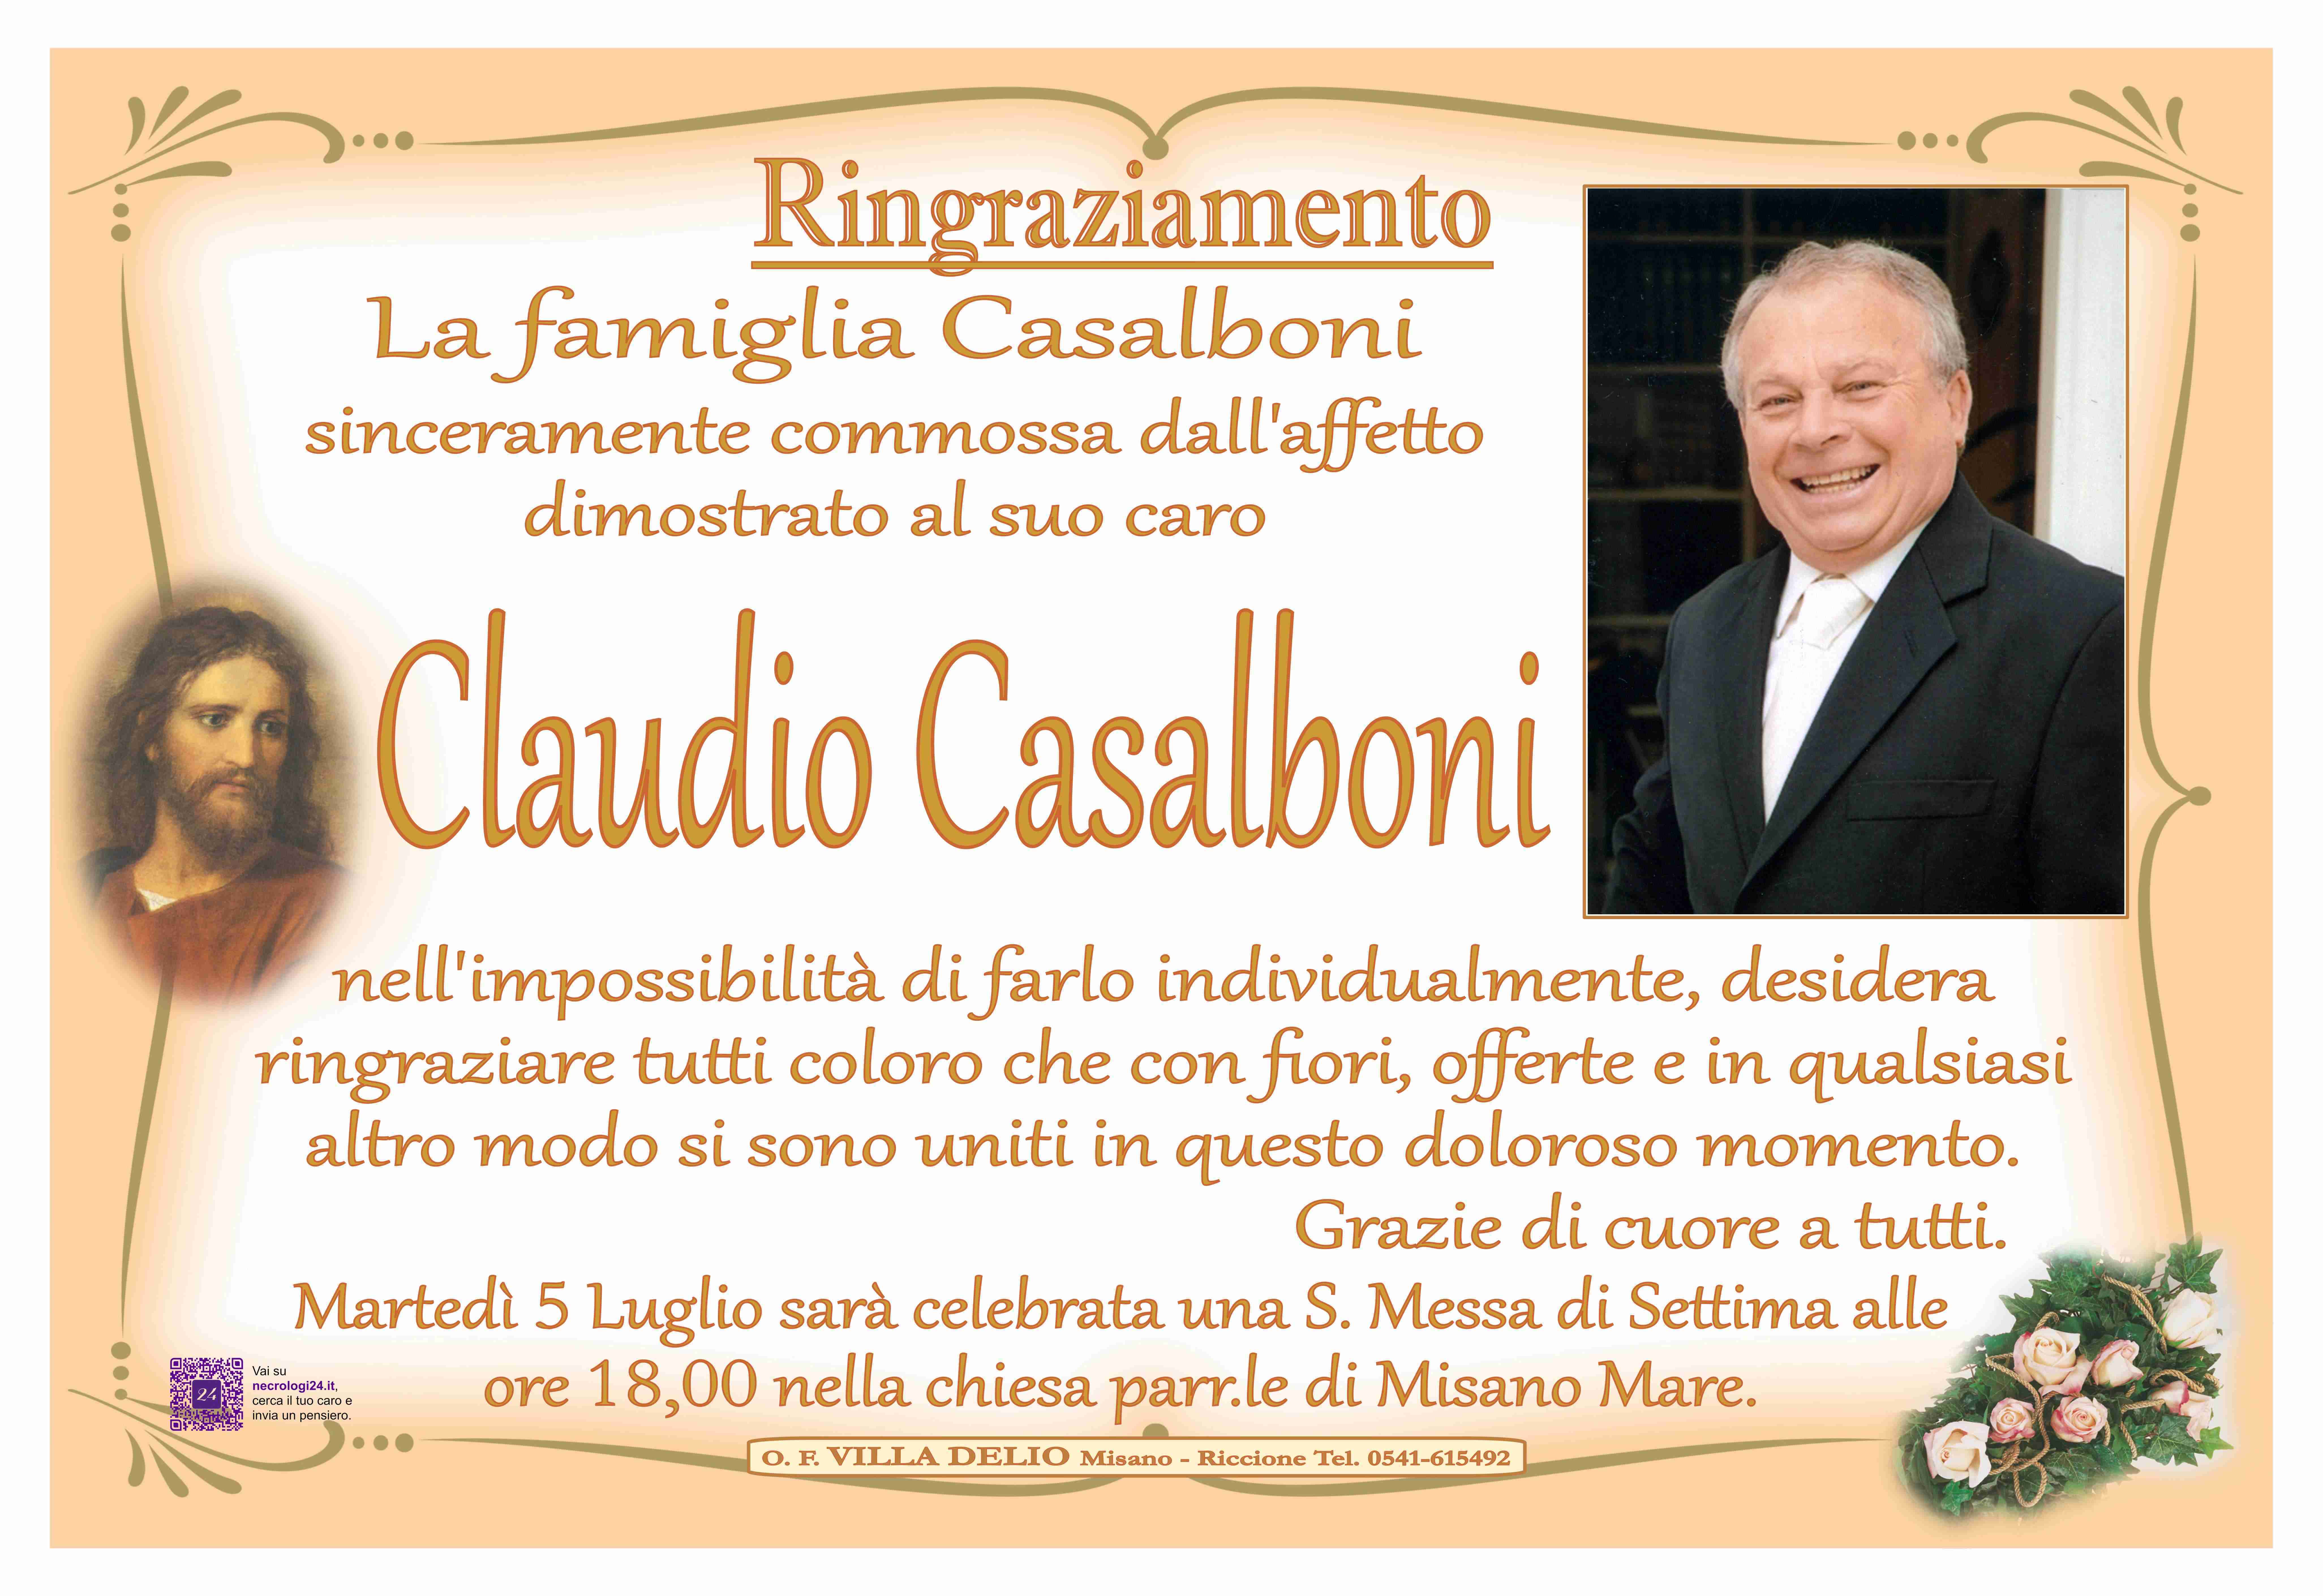 Claudio Casalboni